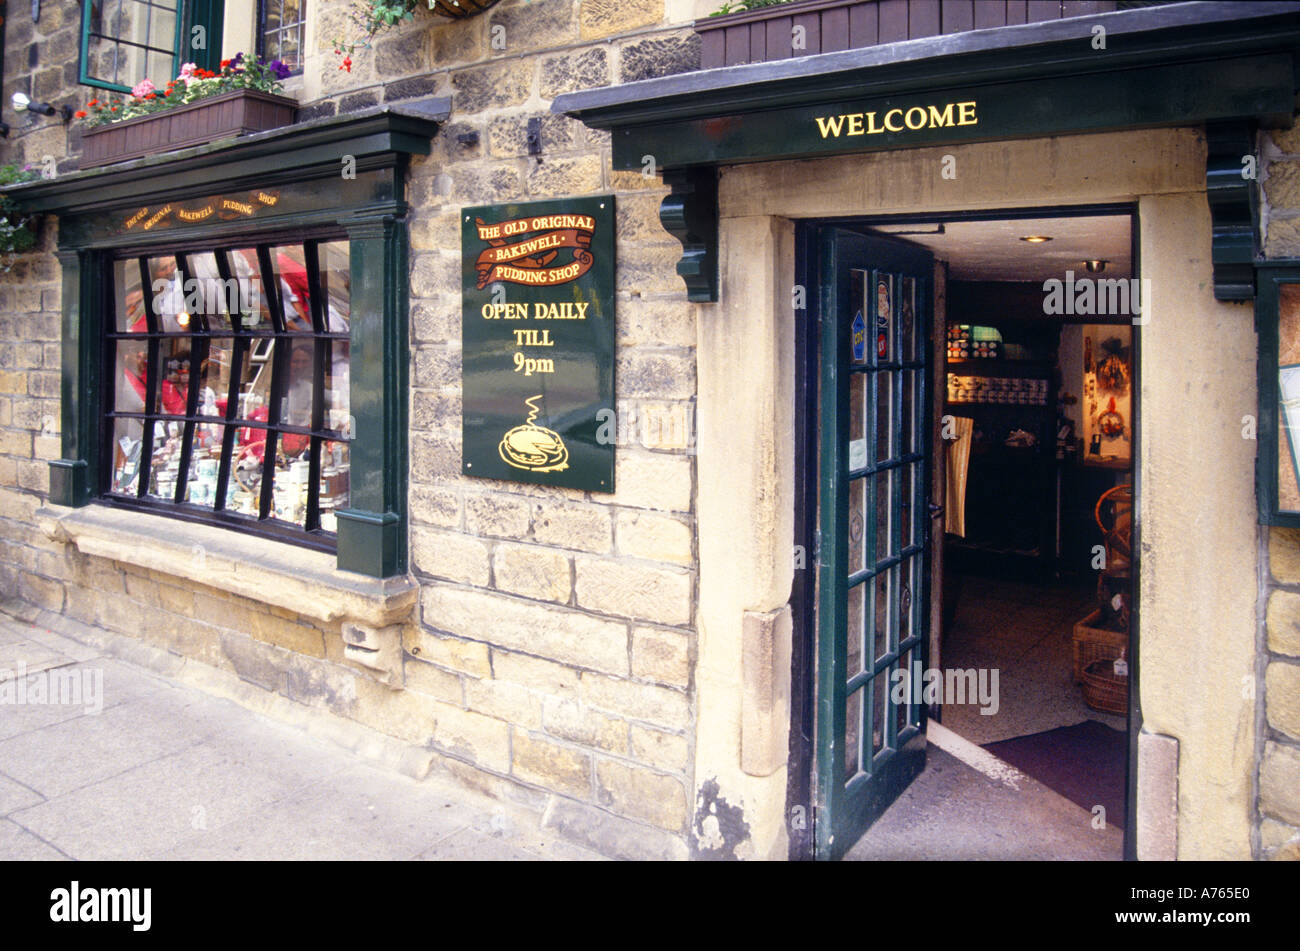 Willkommen Schild über Eingang historischen alten originalen Bakewell Pudding Shop & Restaurant im ersten Stock in Bakewell Stadt Derbyshire Peak District DE Stockfoto